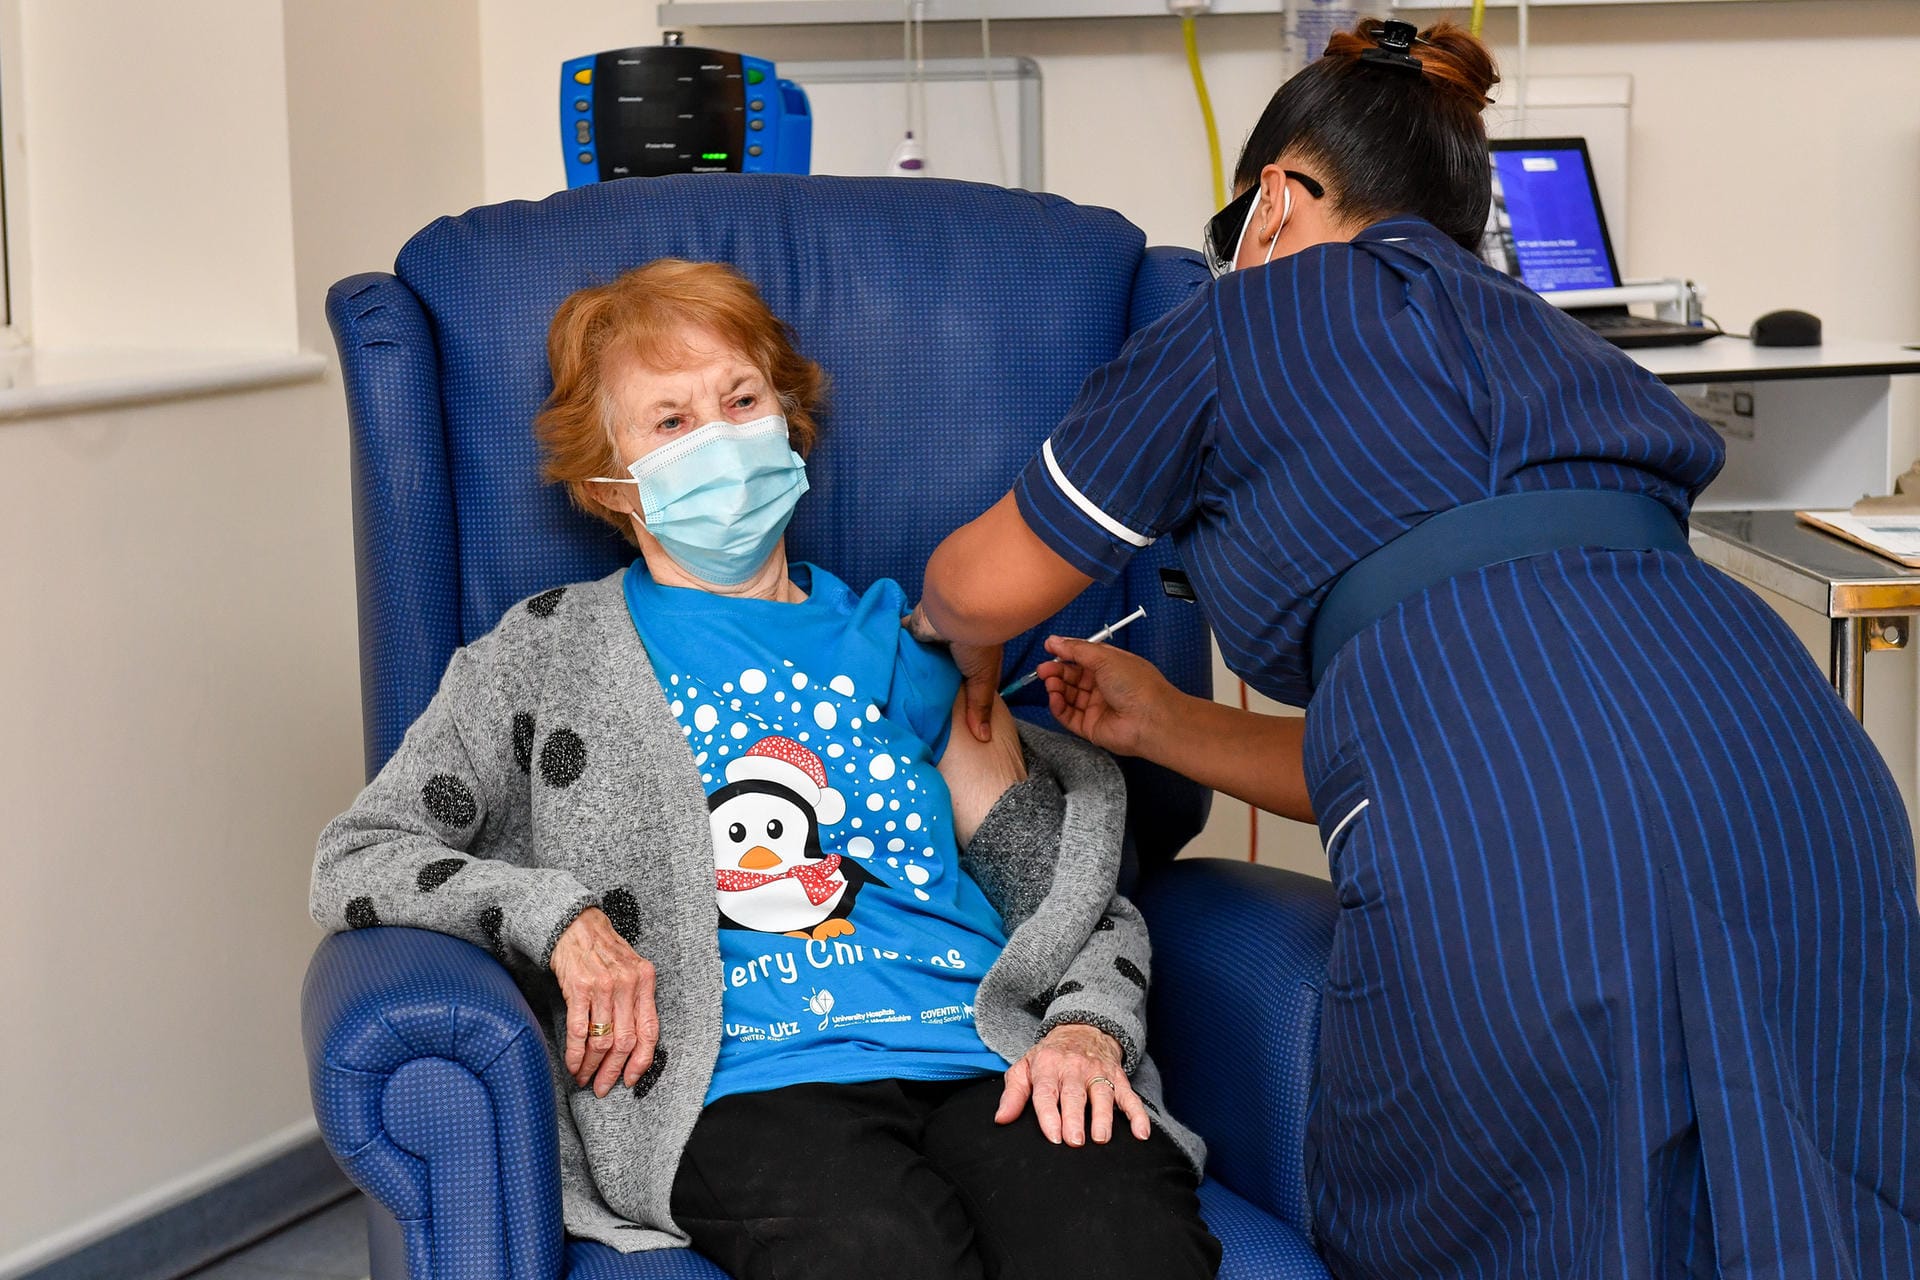 Großbritannien beginnt am 8. Dezember bereits mit der Impfung. Die 90-jährige Margaret Keenan ist die erste Britin, die den Impfstoff erhält.